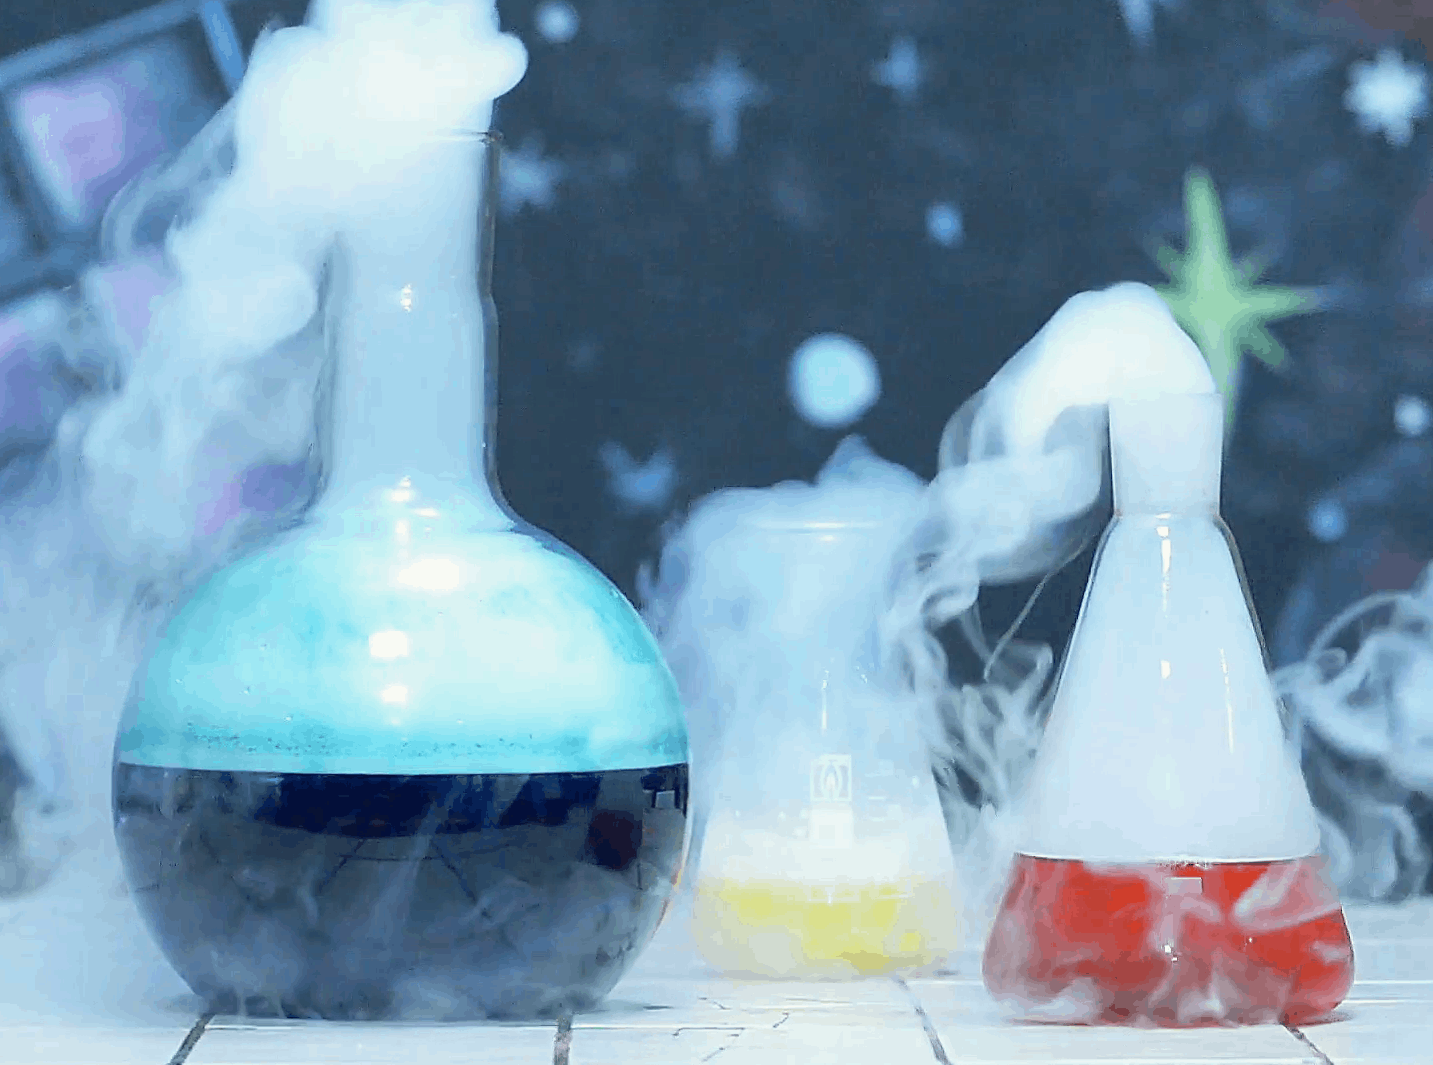 Красивые химические опыты